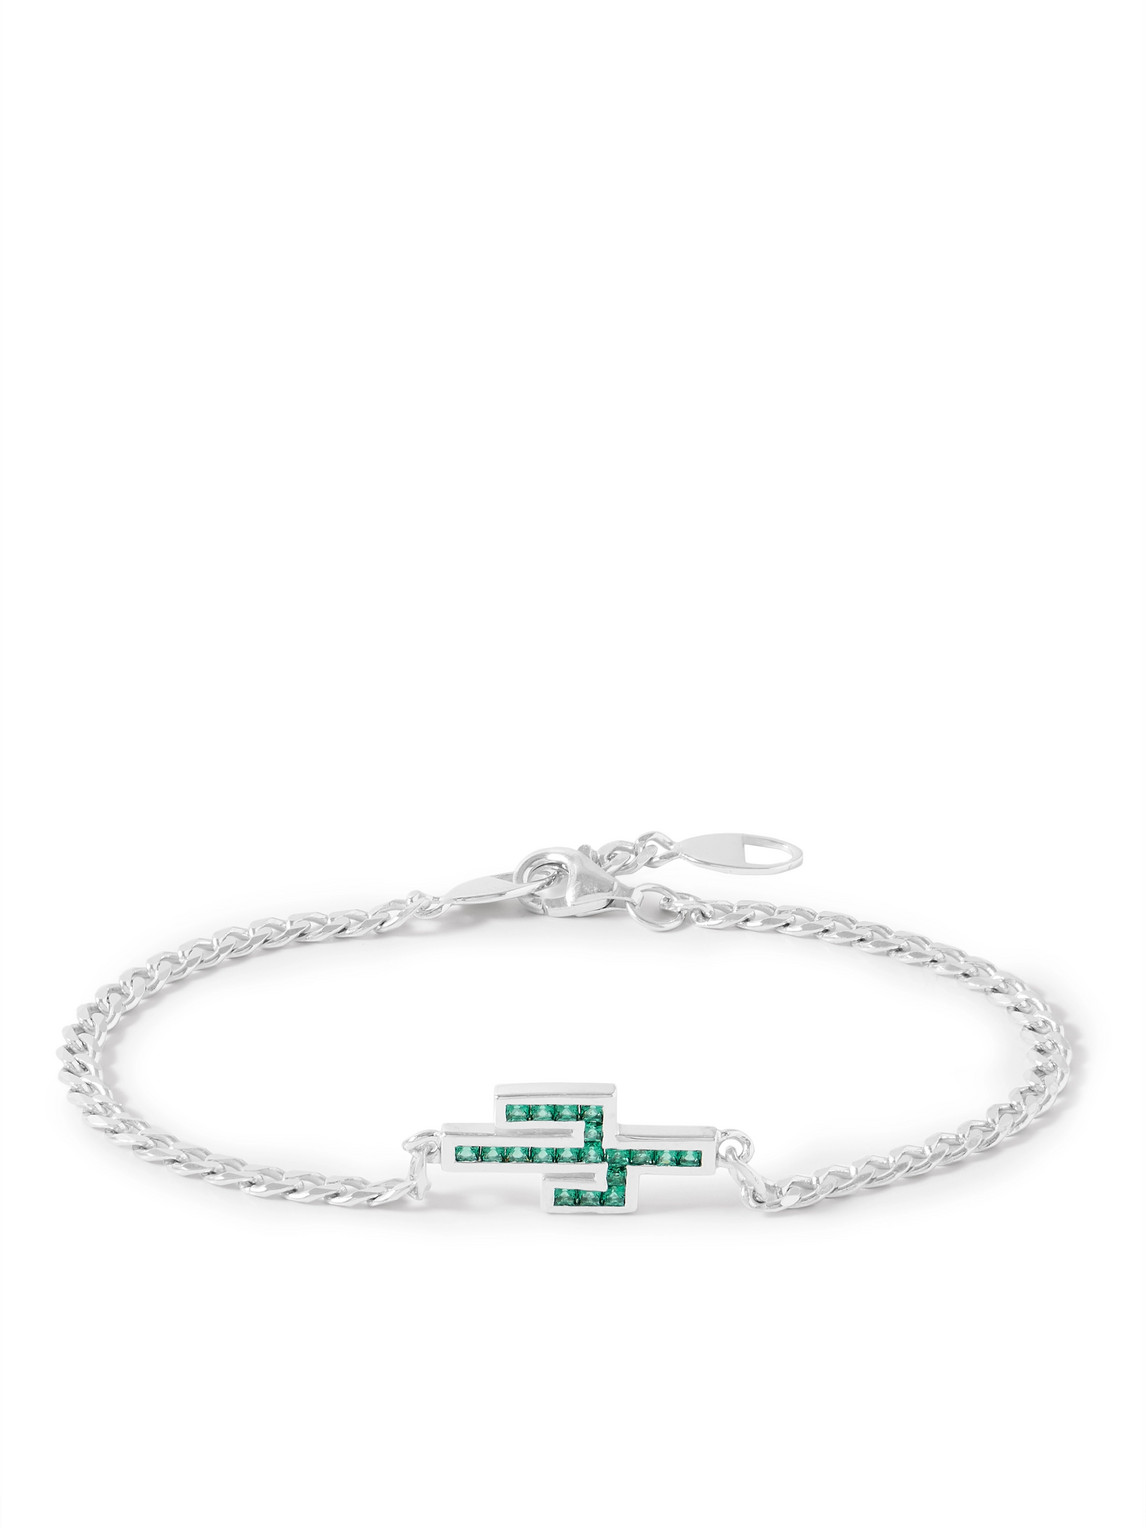 Miansai Everett Williams Silver And Quartz Chain Bracelet In Green